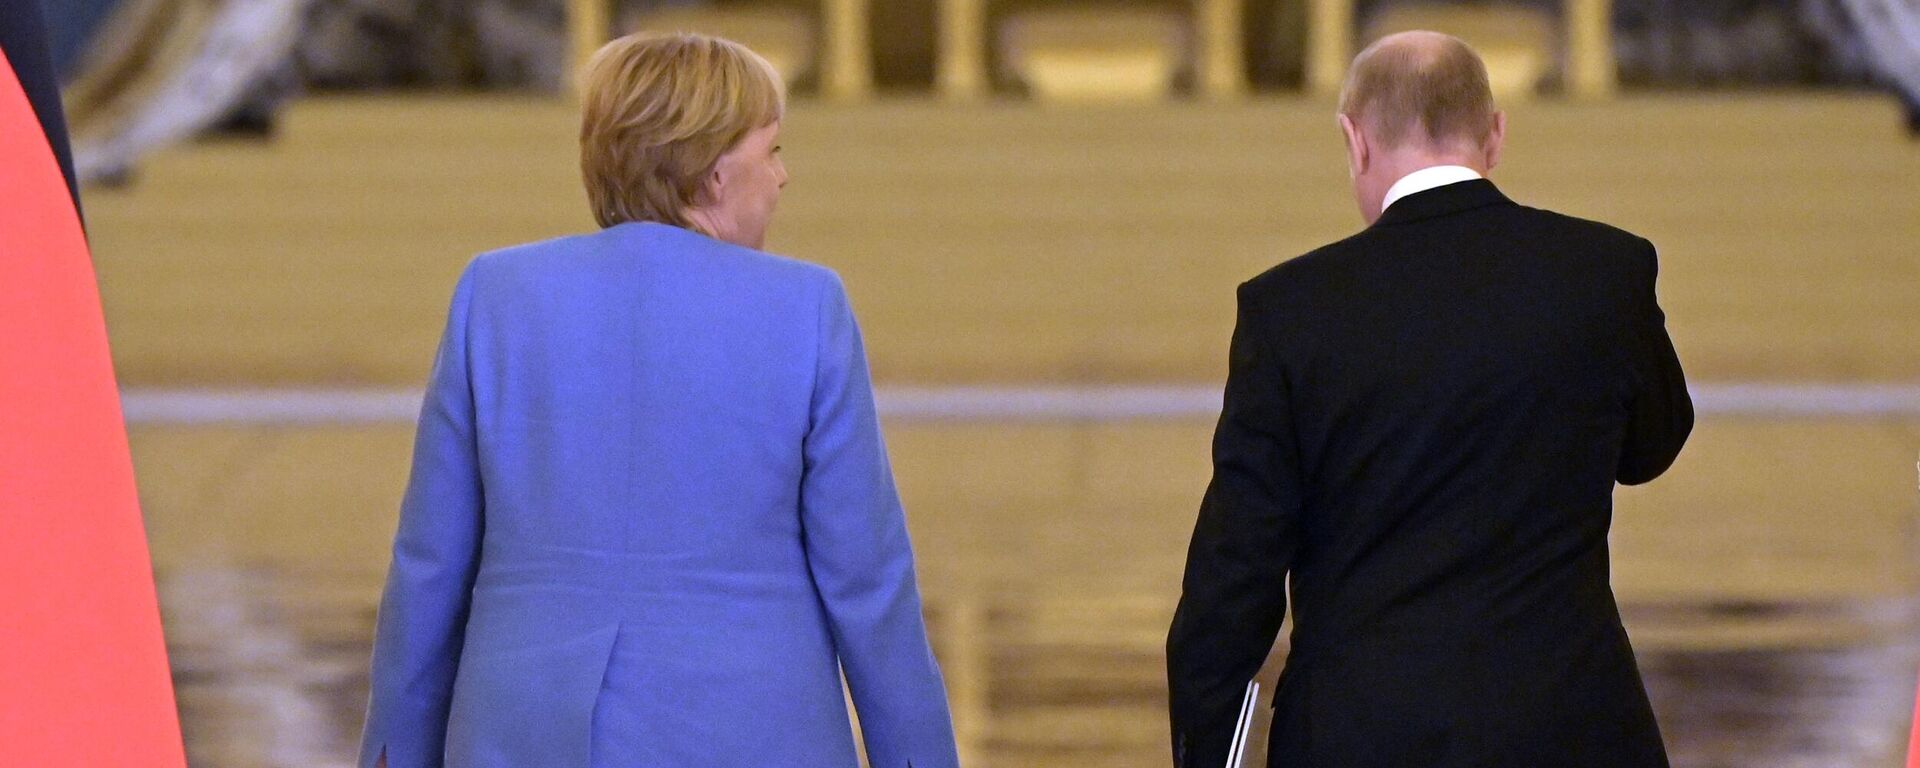 Федеральный канцлер Германии Ангела Меркель и президент РФ Владимир Путин после совместной пресс-конференции по итогам встречи в Москве - Sputnik Латвия, 1920, 23.08.2021